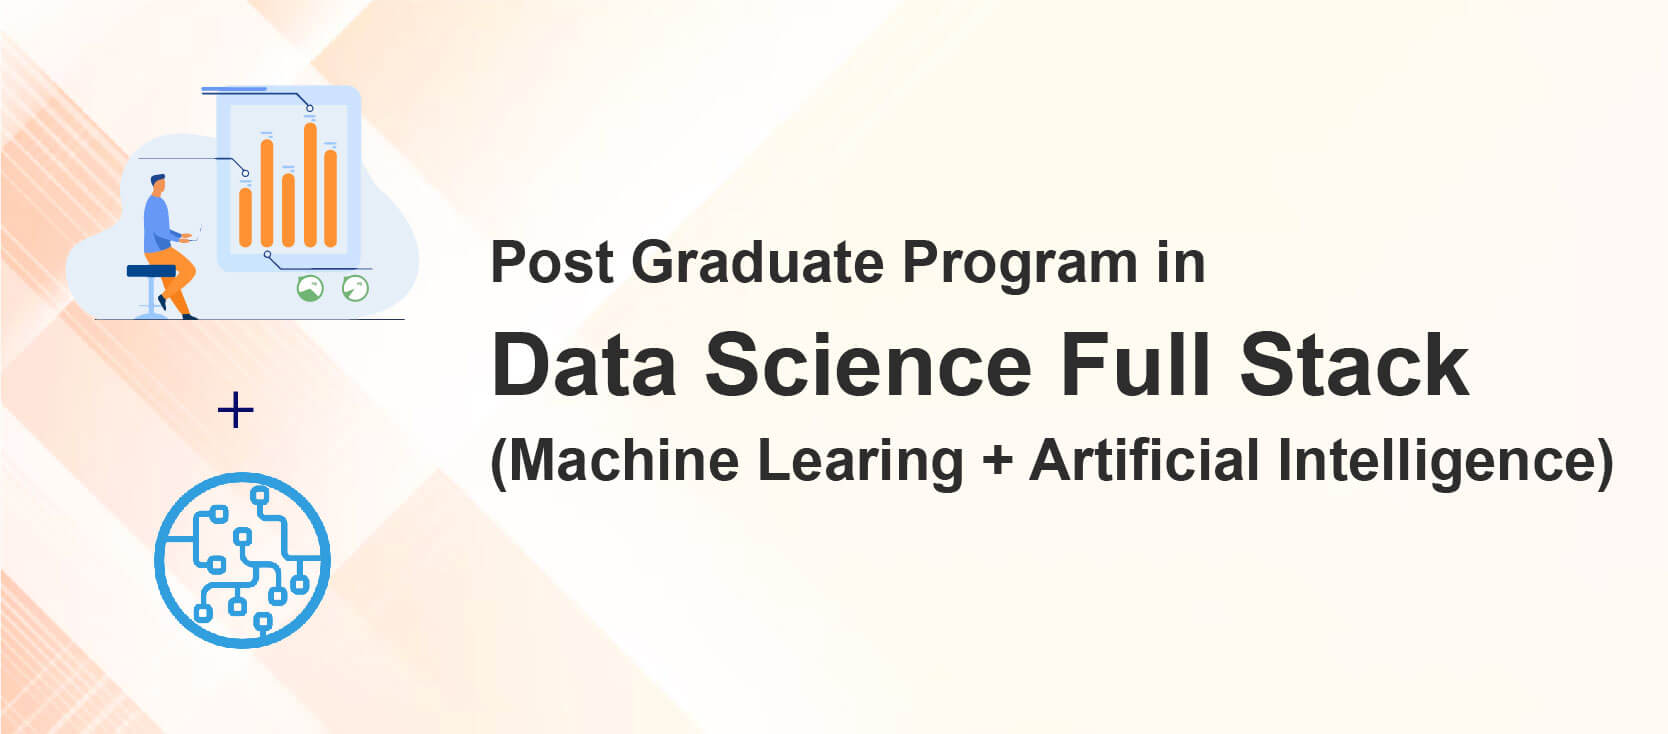 PG Program in Data Science